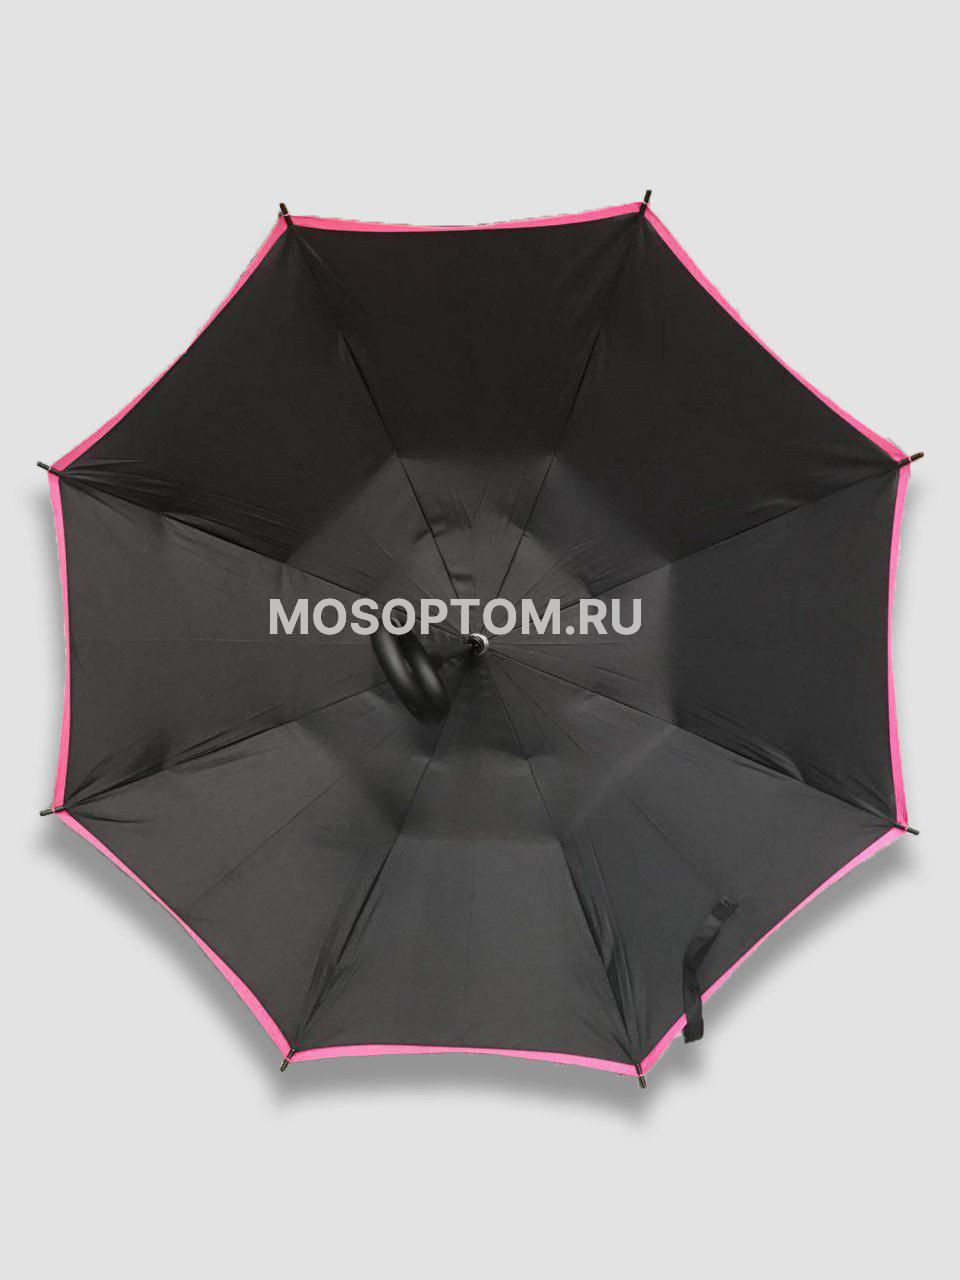 Двухсторонний зонт с обратным открыванием оптом 